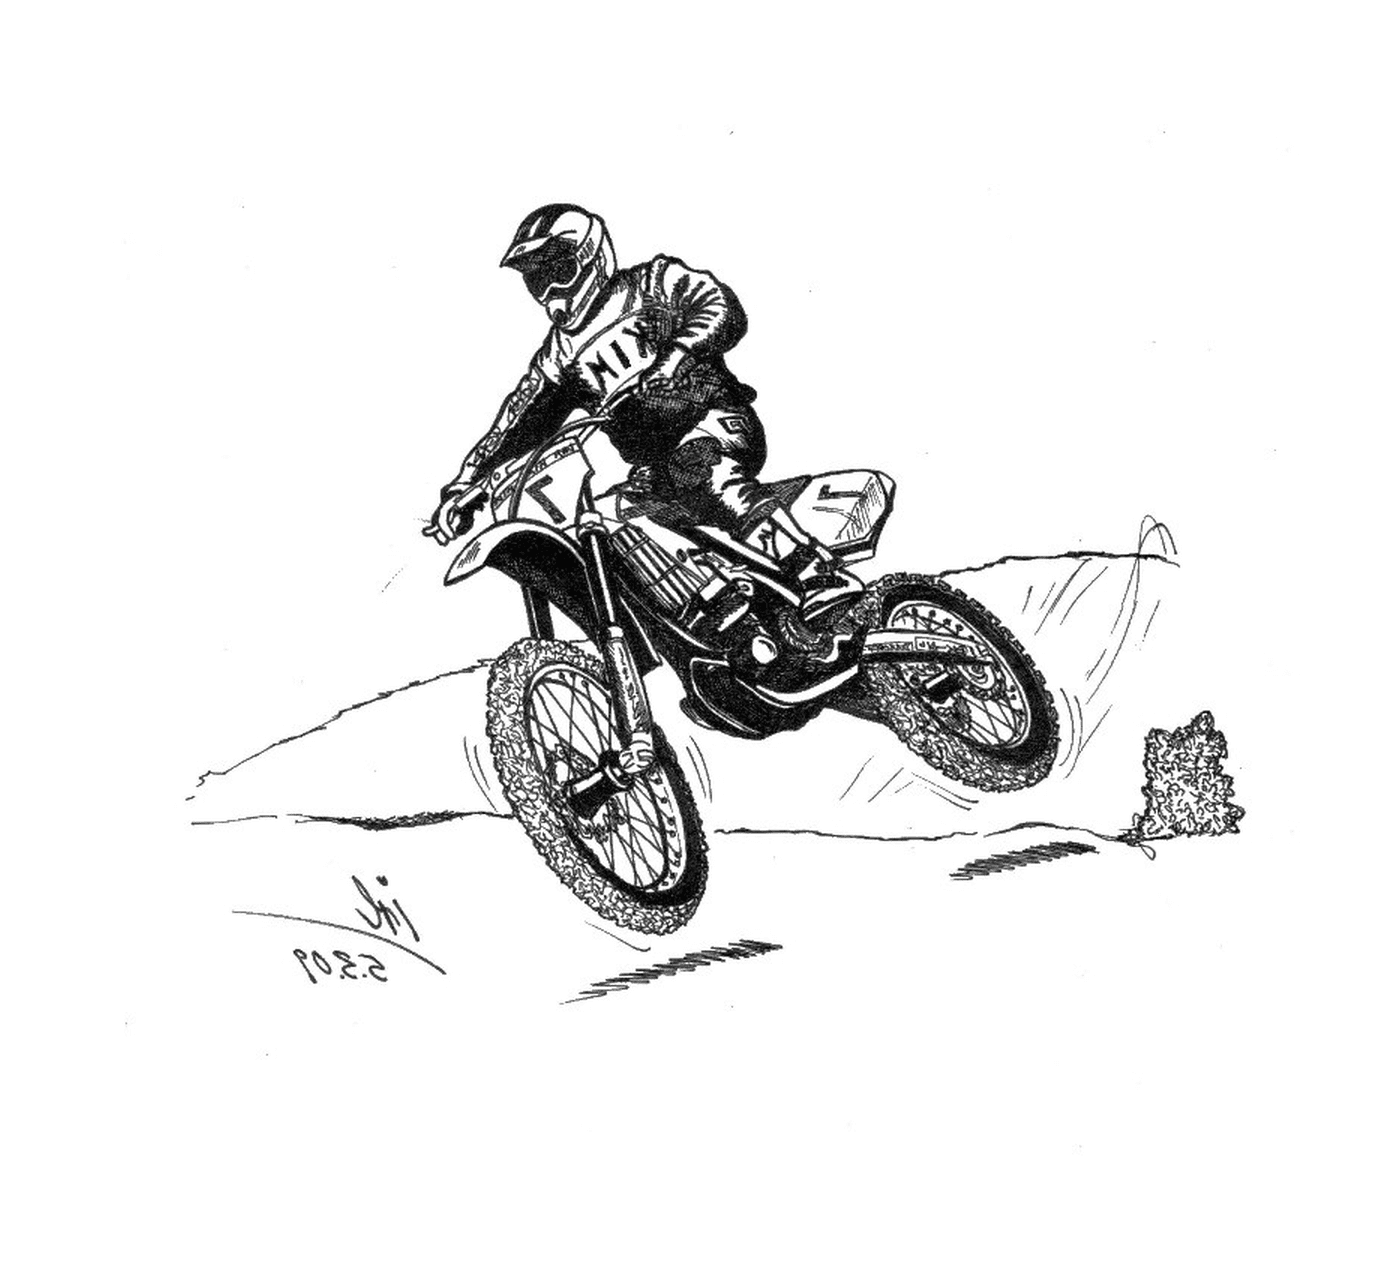  Homens na cruz da motocicleta em uma colina 